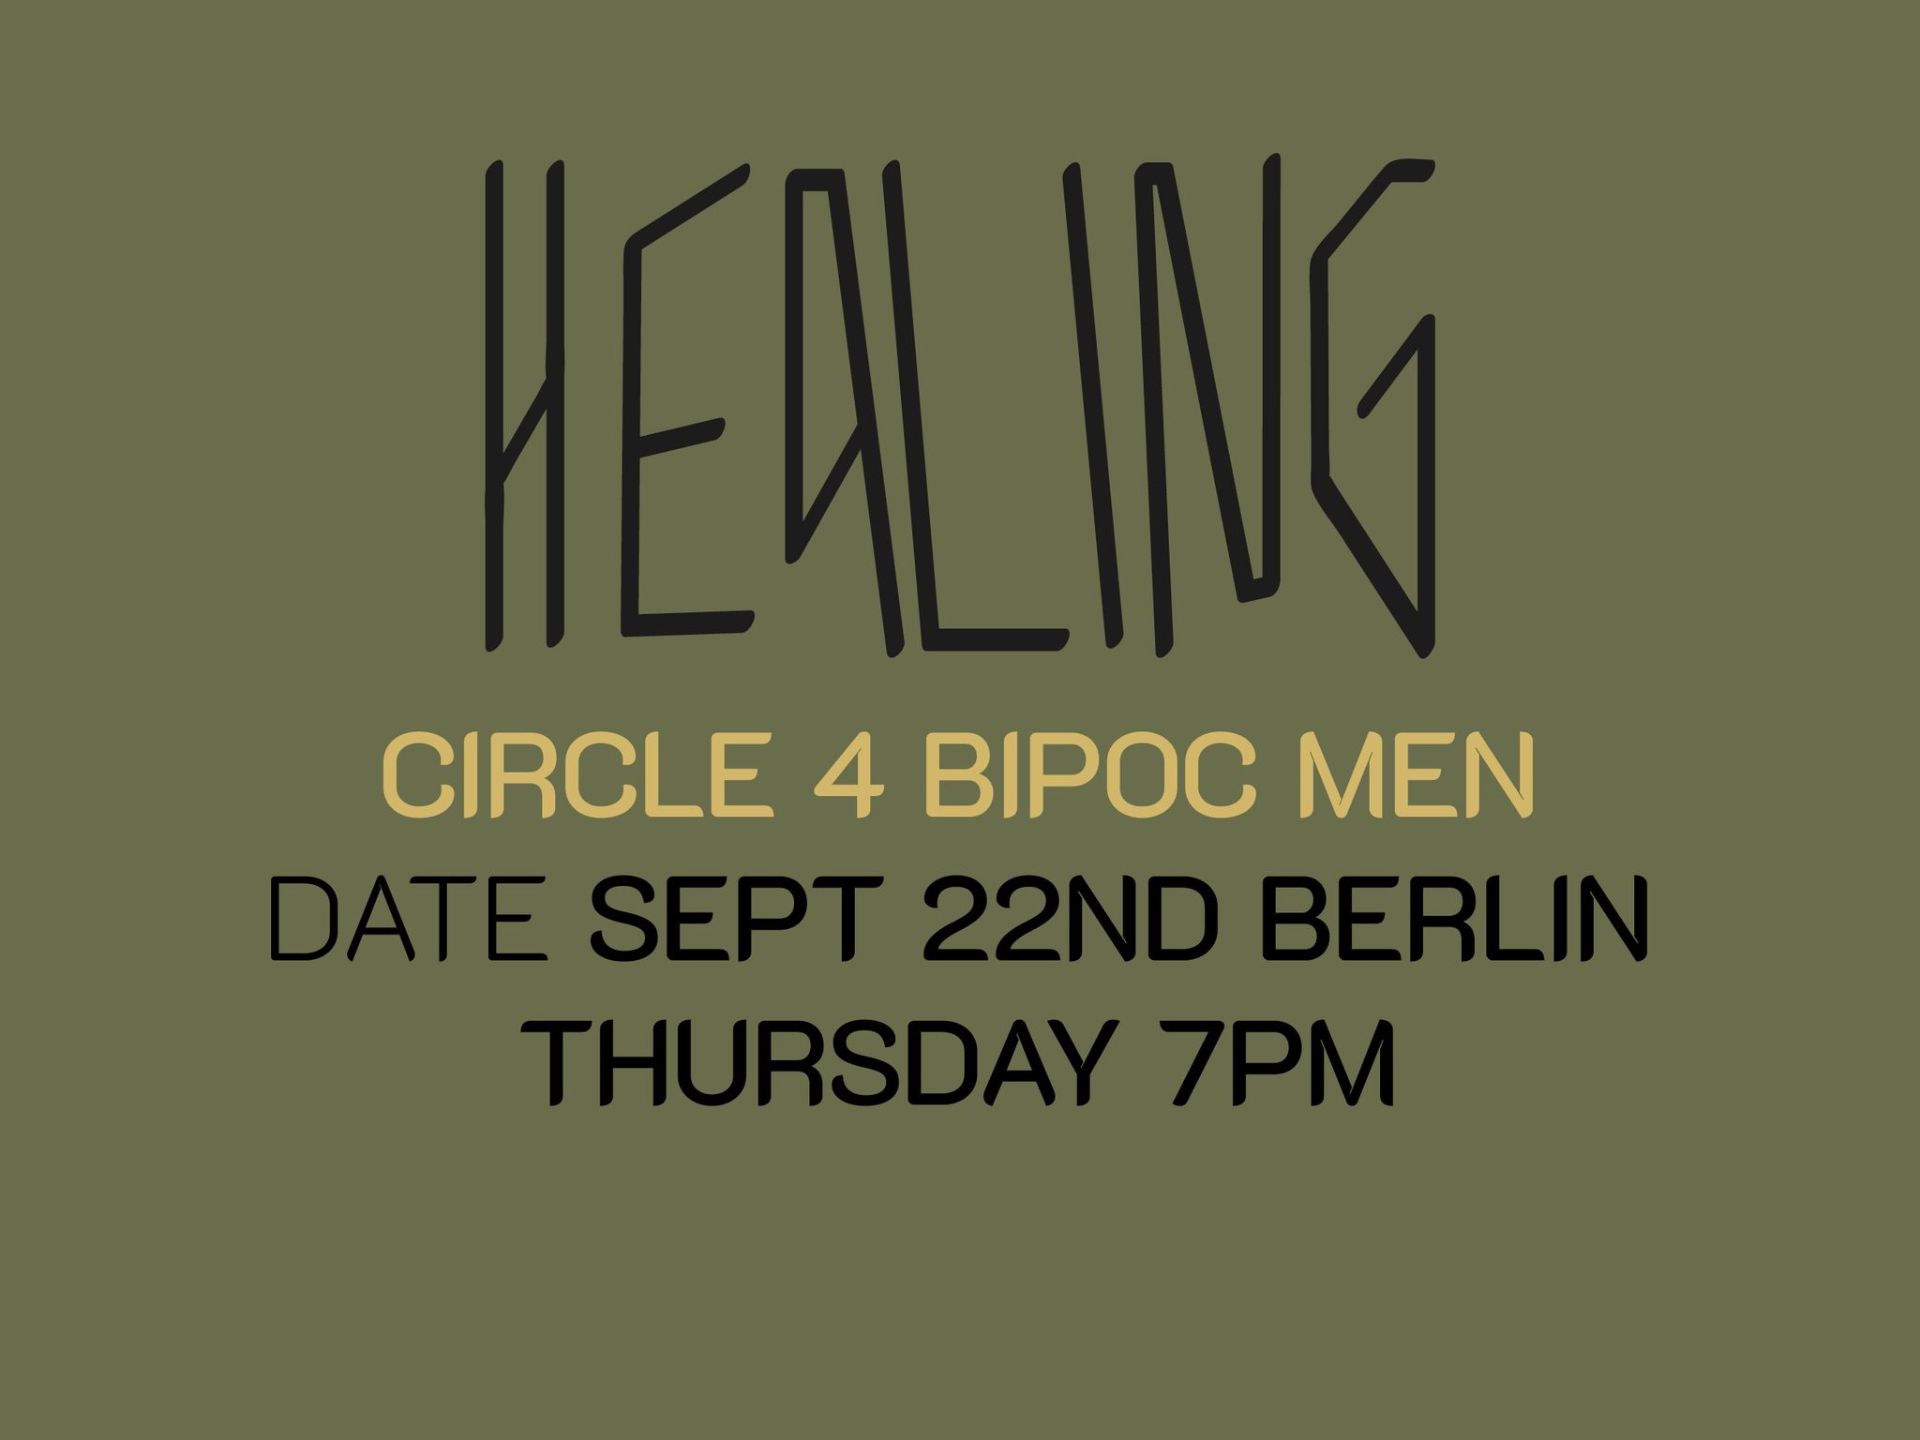 Healing Circle 4 BIPOC Men